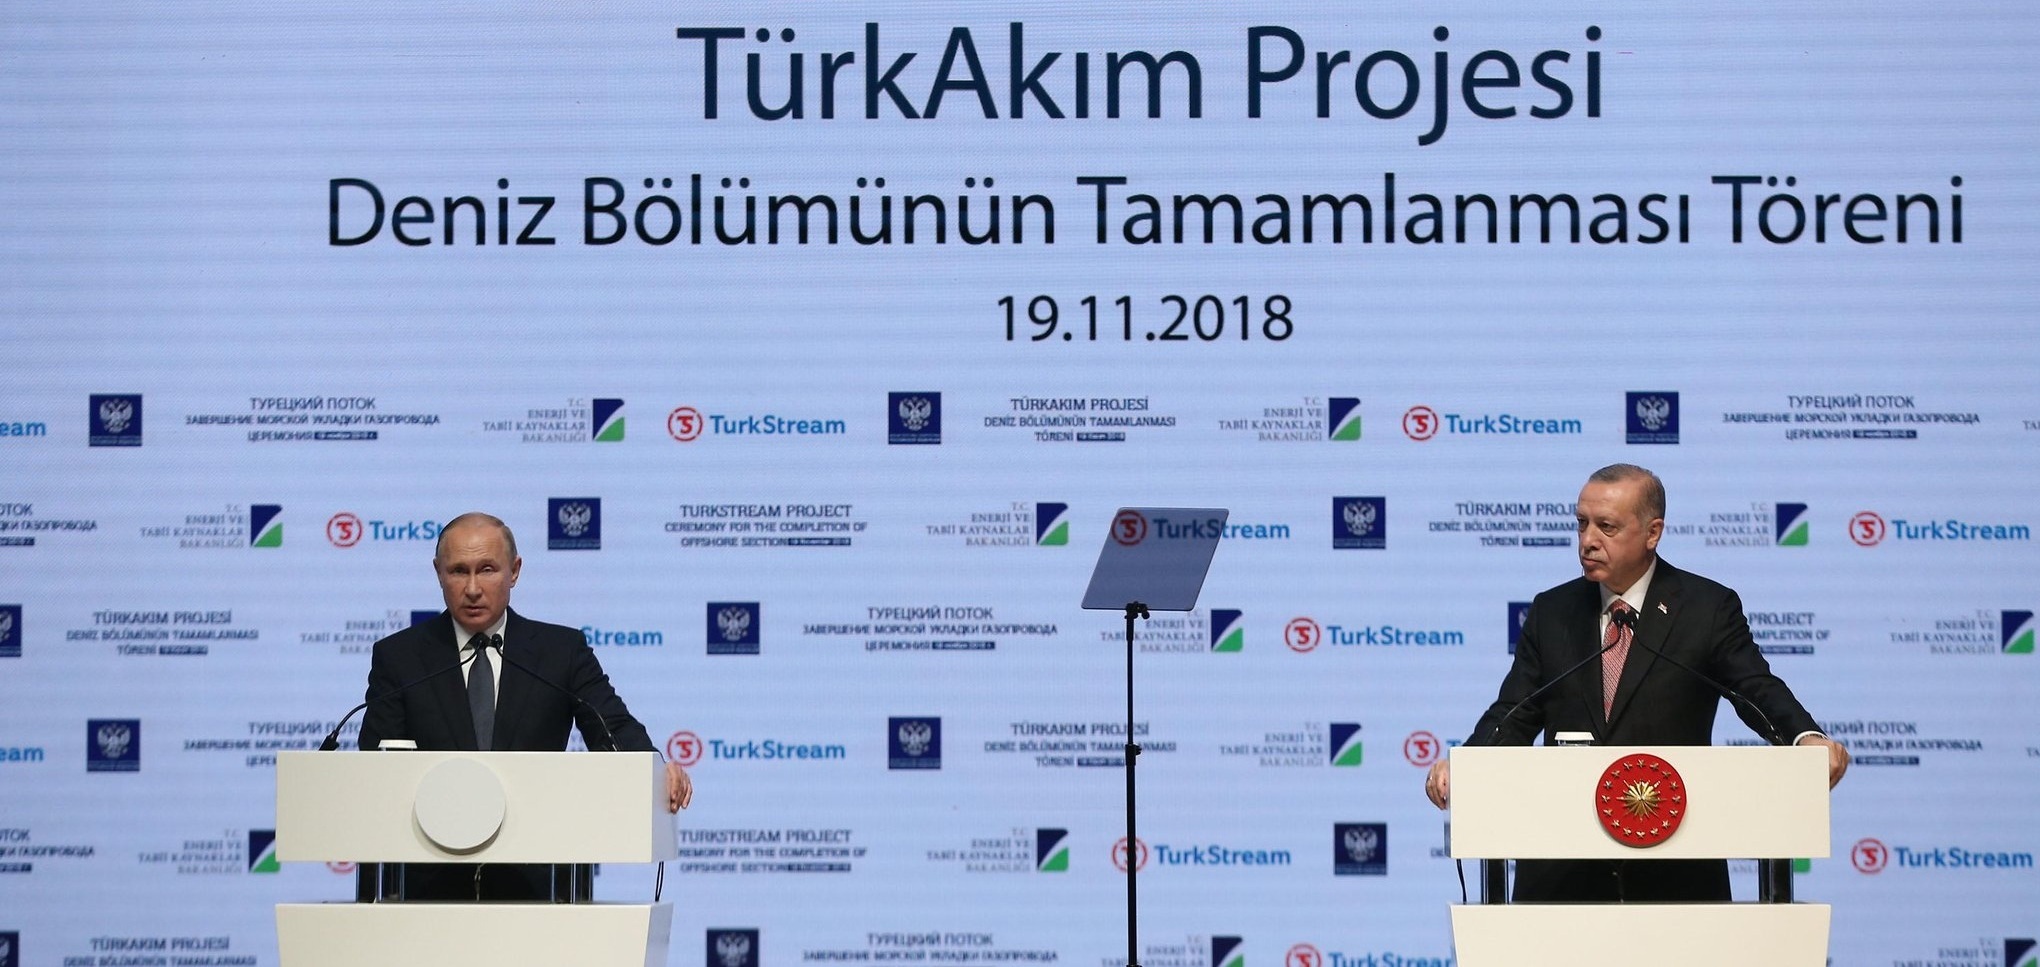 Πούτιν και Ερντογάν μαζί στην τελετή ολοκλήρωσης του υπεράκτιου τμήματος του turkstream